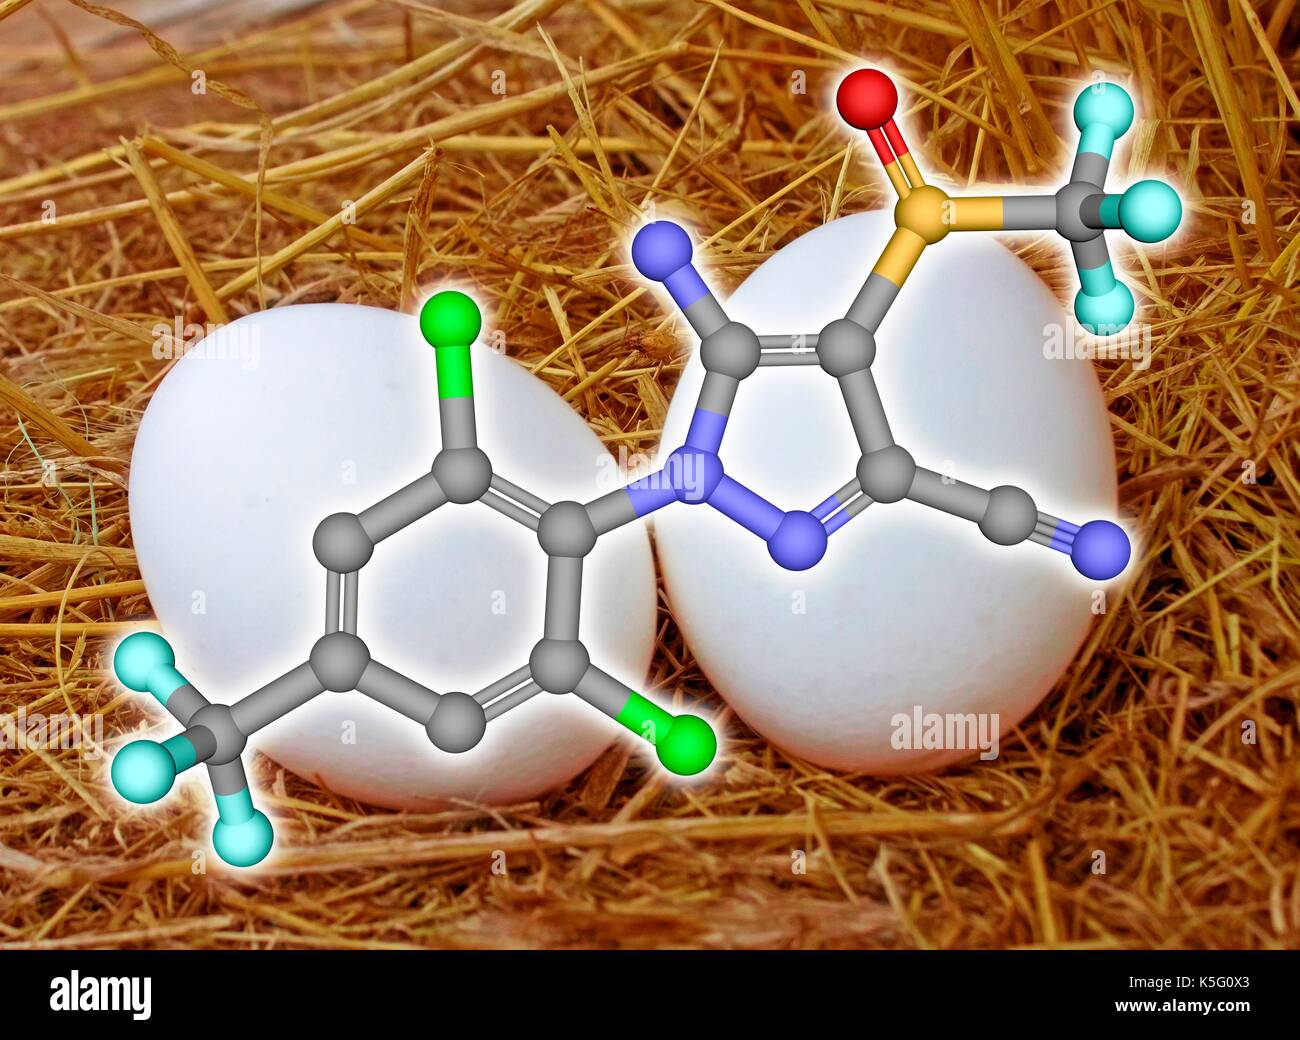 Fipronile insetticida, sfera e stick modello molecolare sovrapposti di un nido di polli con due uova. Gli atomi sono rappresentati come sfere con codifica colore: carbonio (grigio), Ossigeno (rosso), Azoto (blu), cloro (verdi), fluoro (ciano), zolfo (giallo). Idrogeni sono nascosti Foto Stock